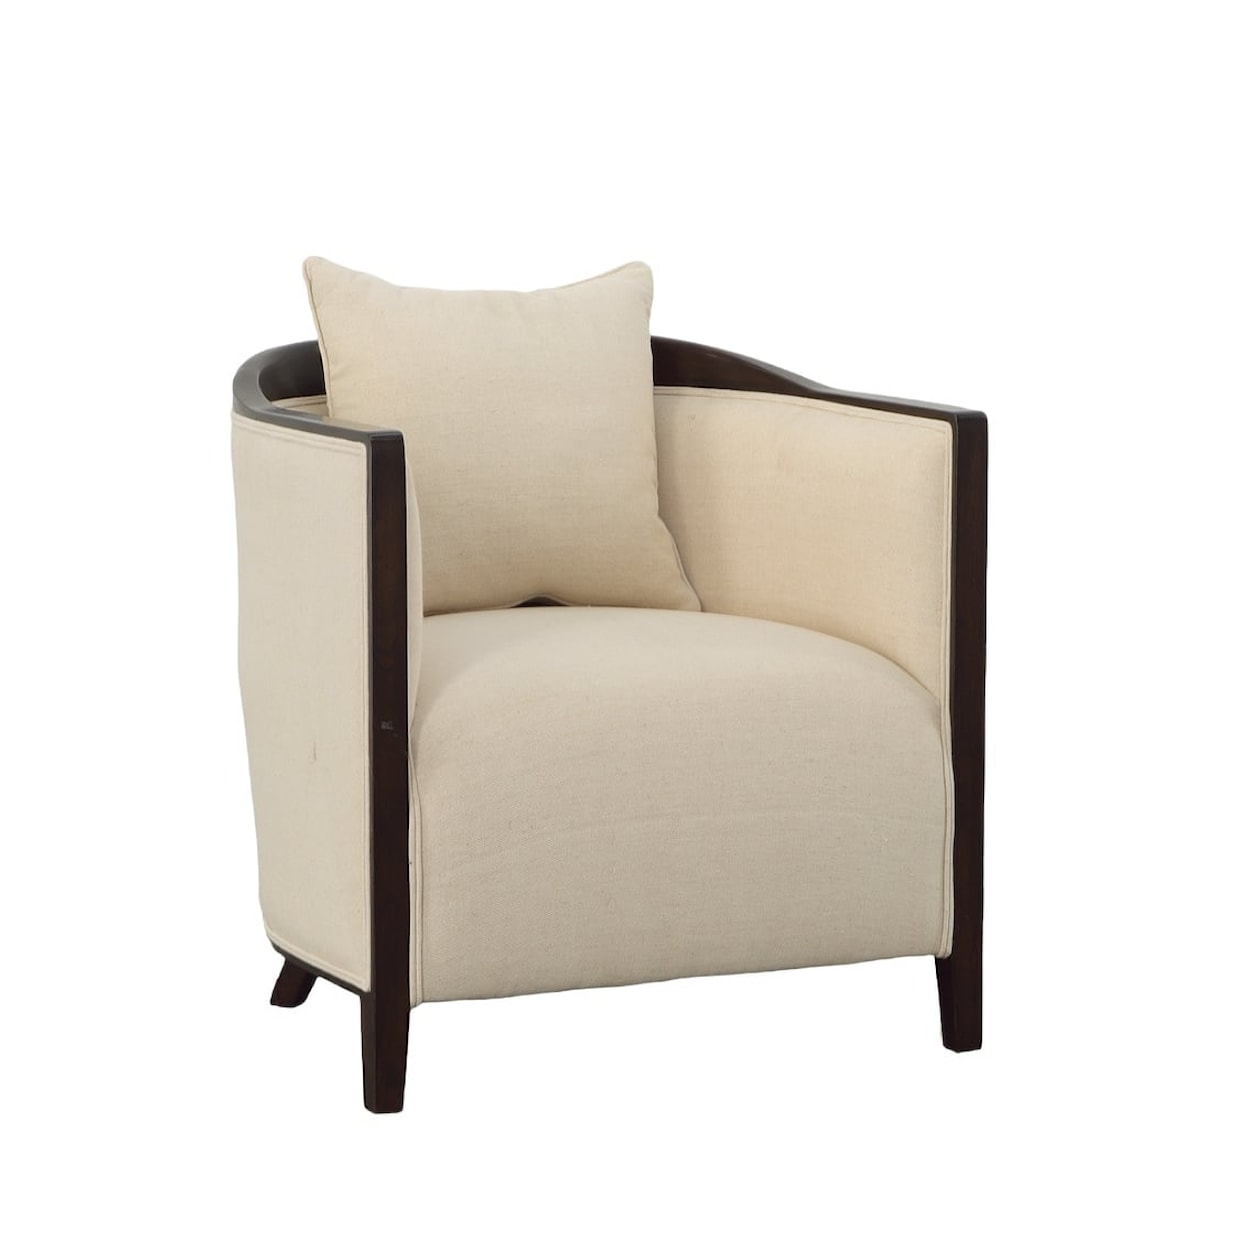 Furniture Classics Furniture Classics Ariba Occasional Chair